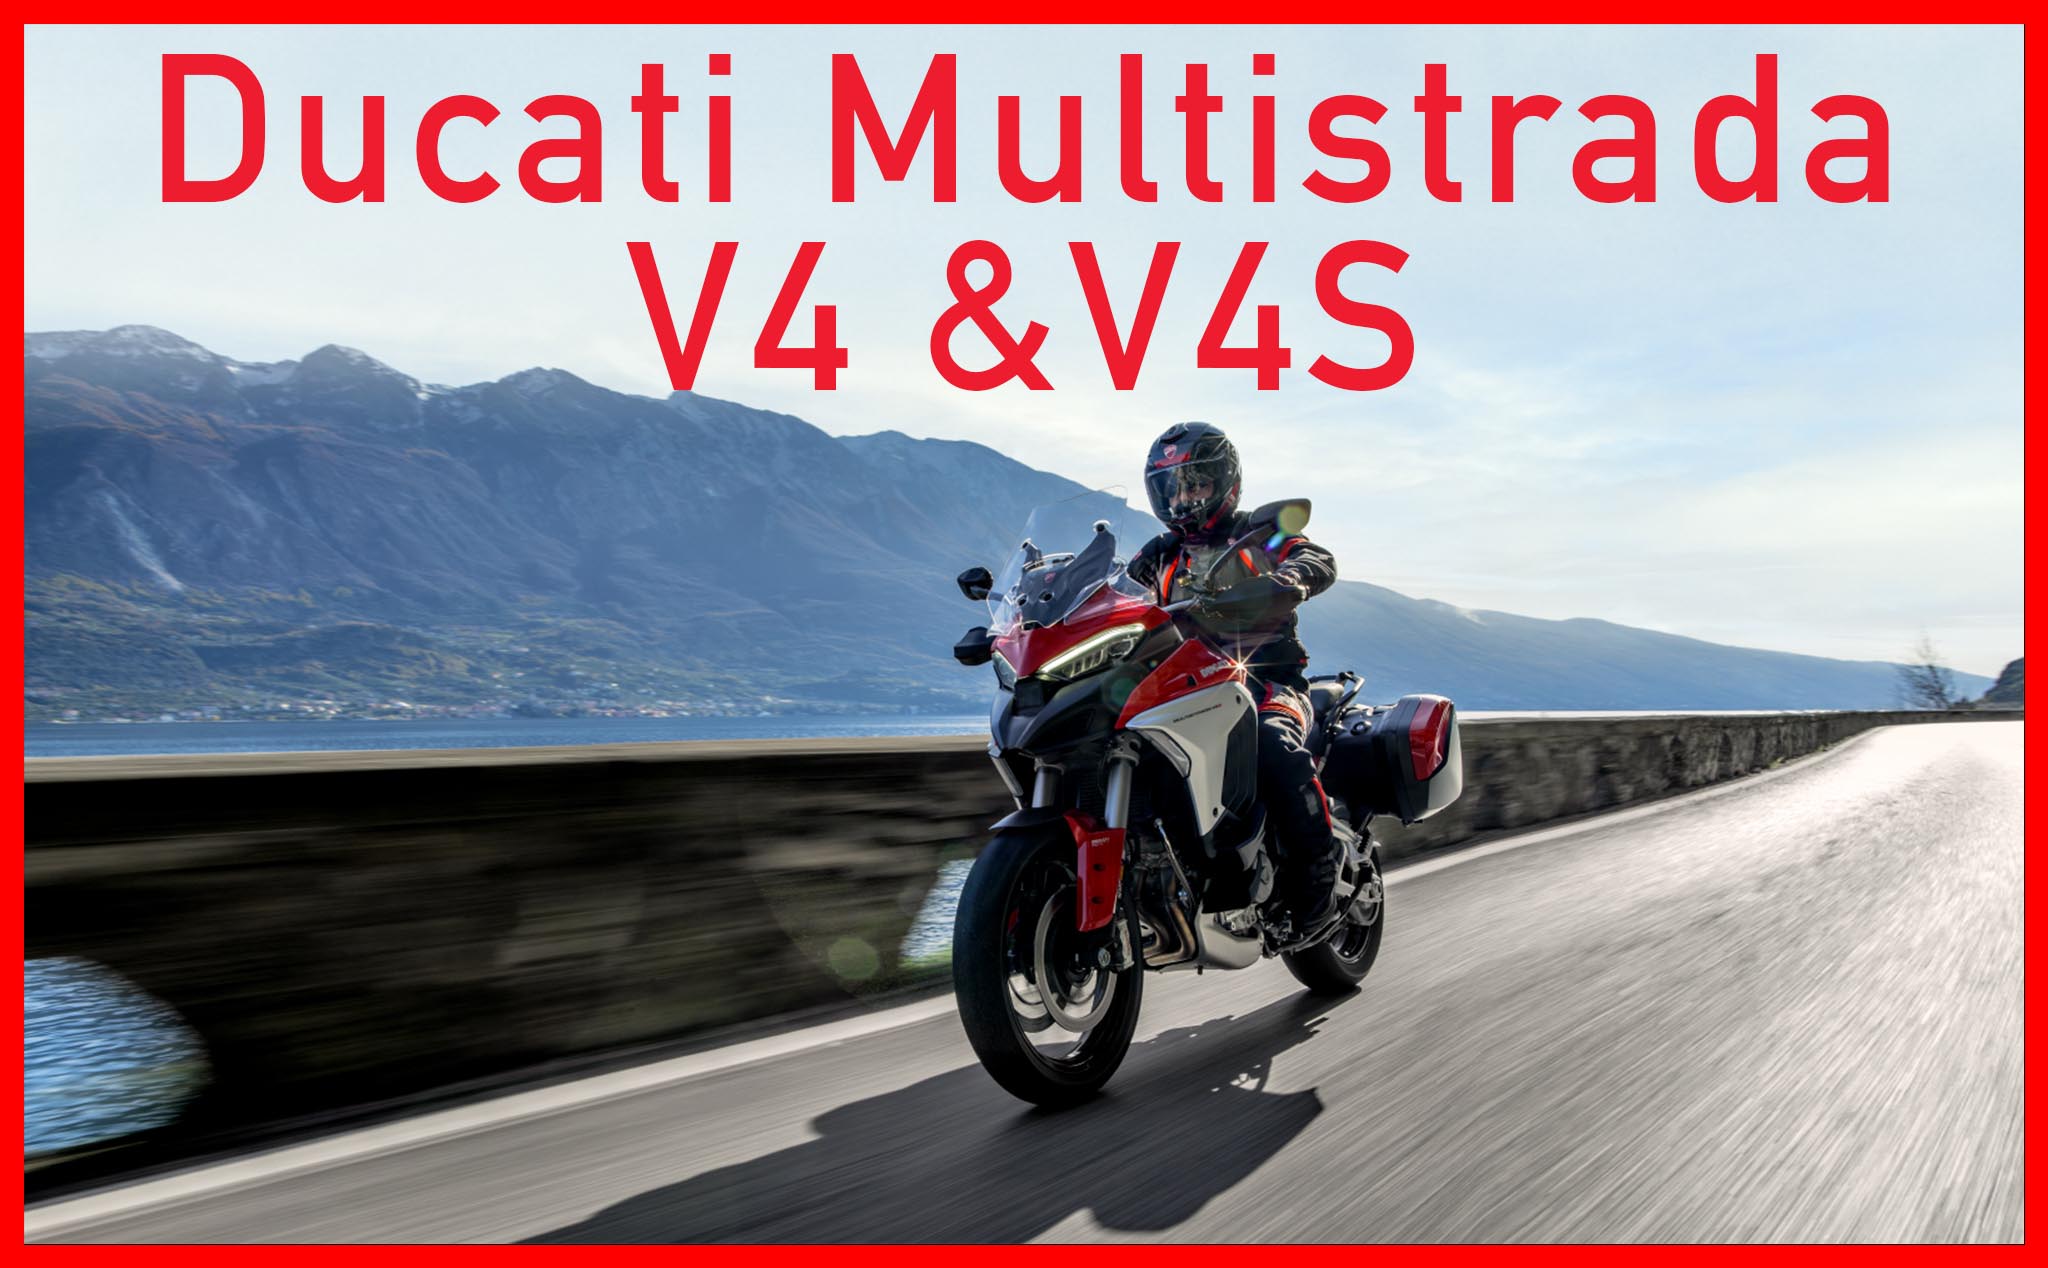 Ducati Multistrada V4 & V4S: Cai trị mọi cung đường!